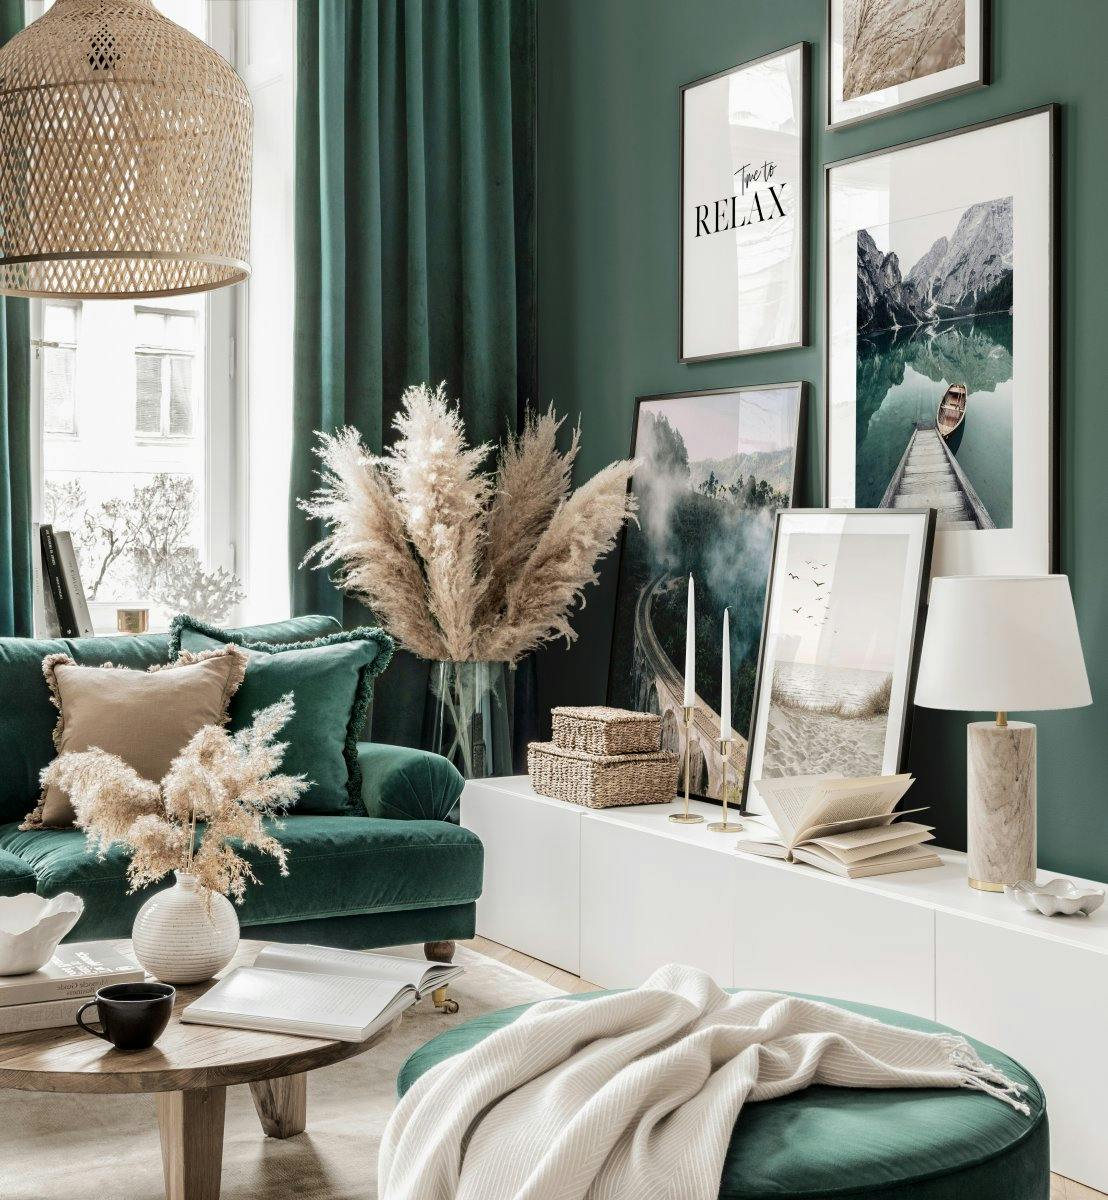 جدار من ظلال اللون الأخضر الداكن لغرفة المعيشة مع إطارات خشبية سوداء